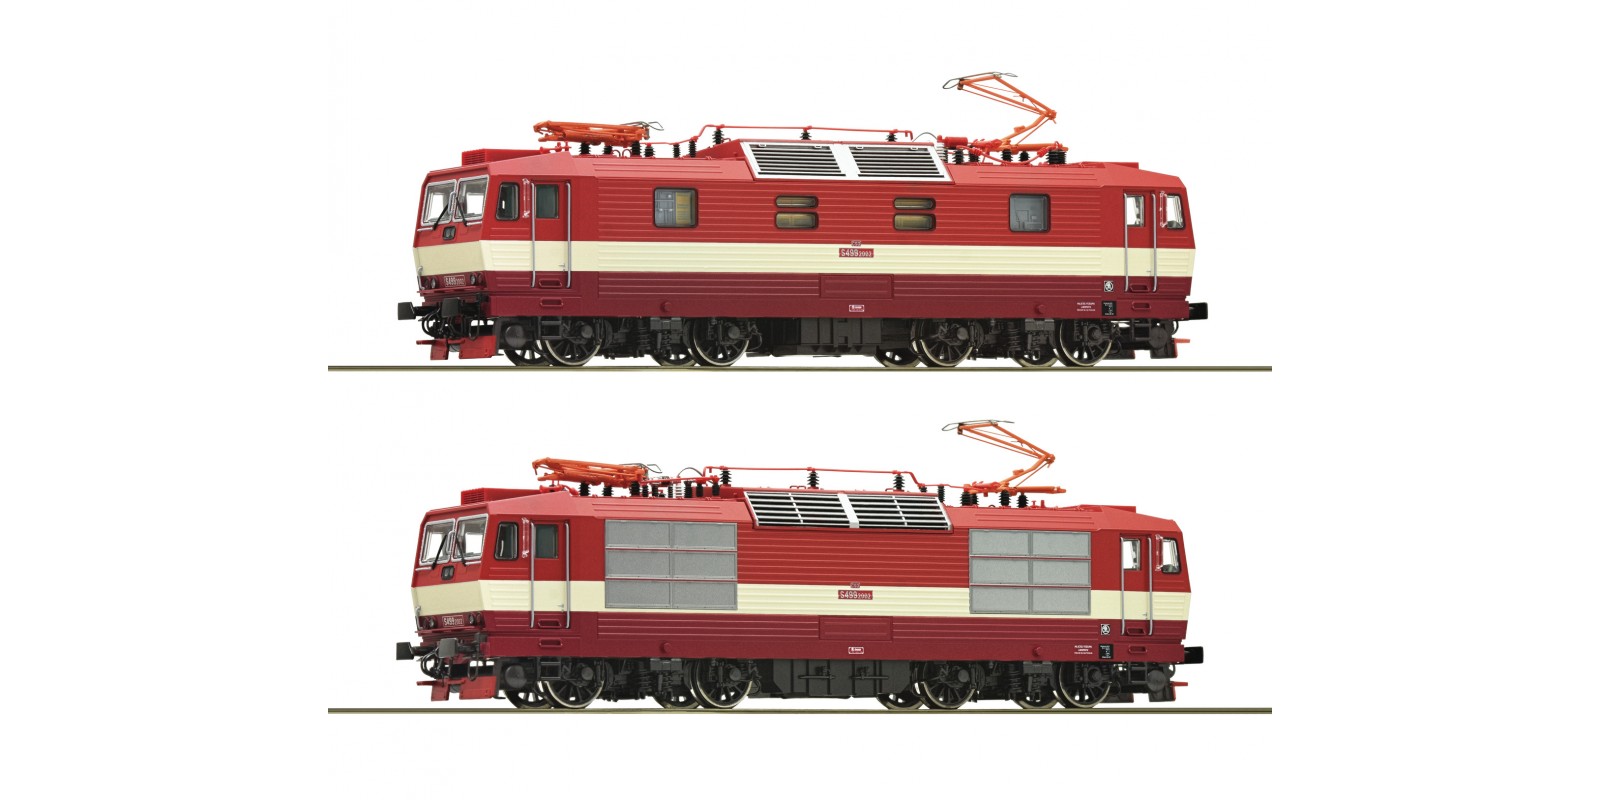 RO79239 Electric locomotive S 499.2002, CSD